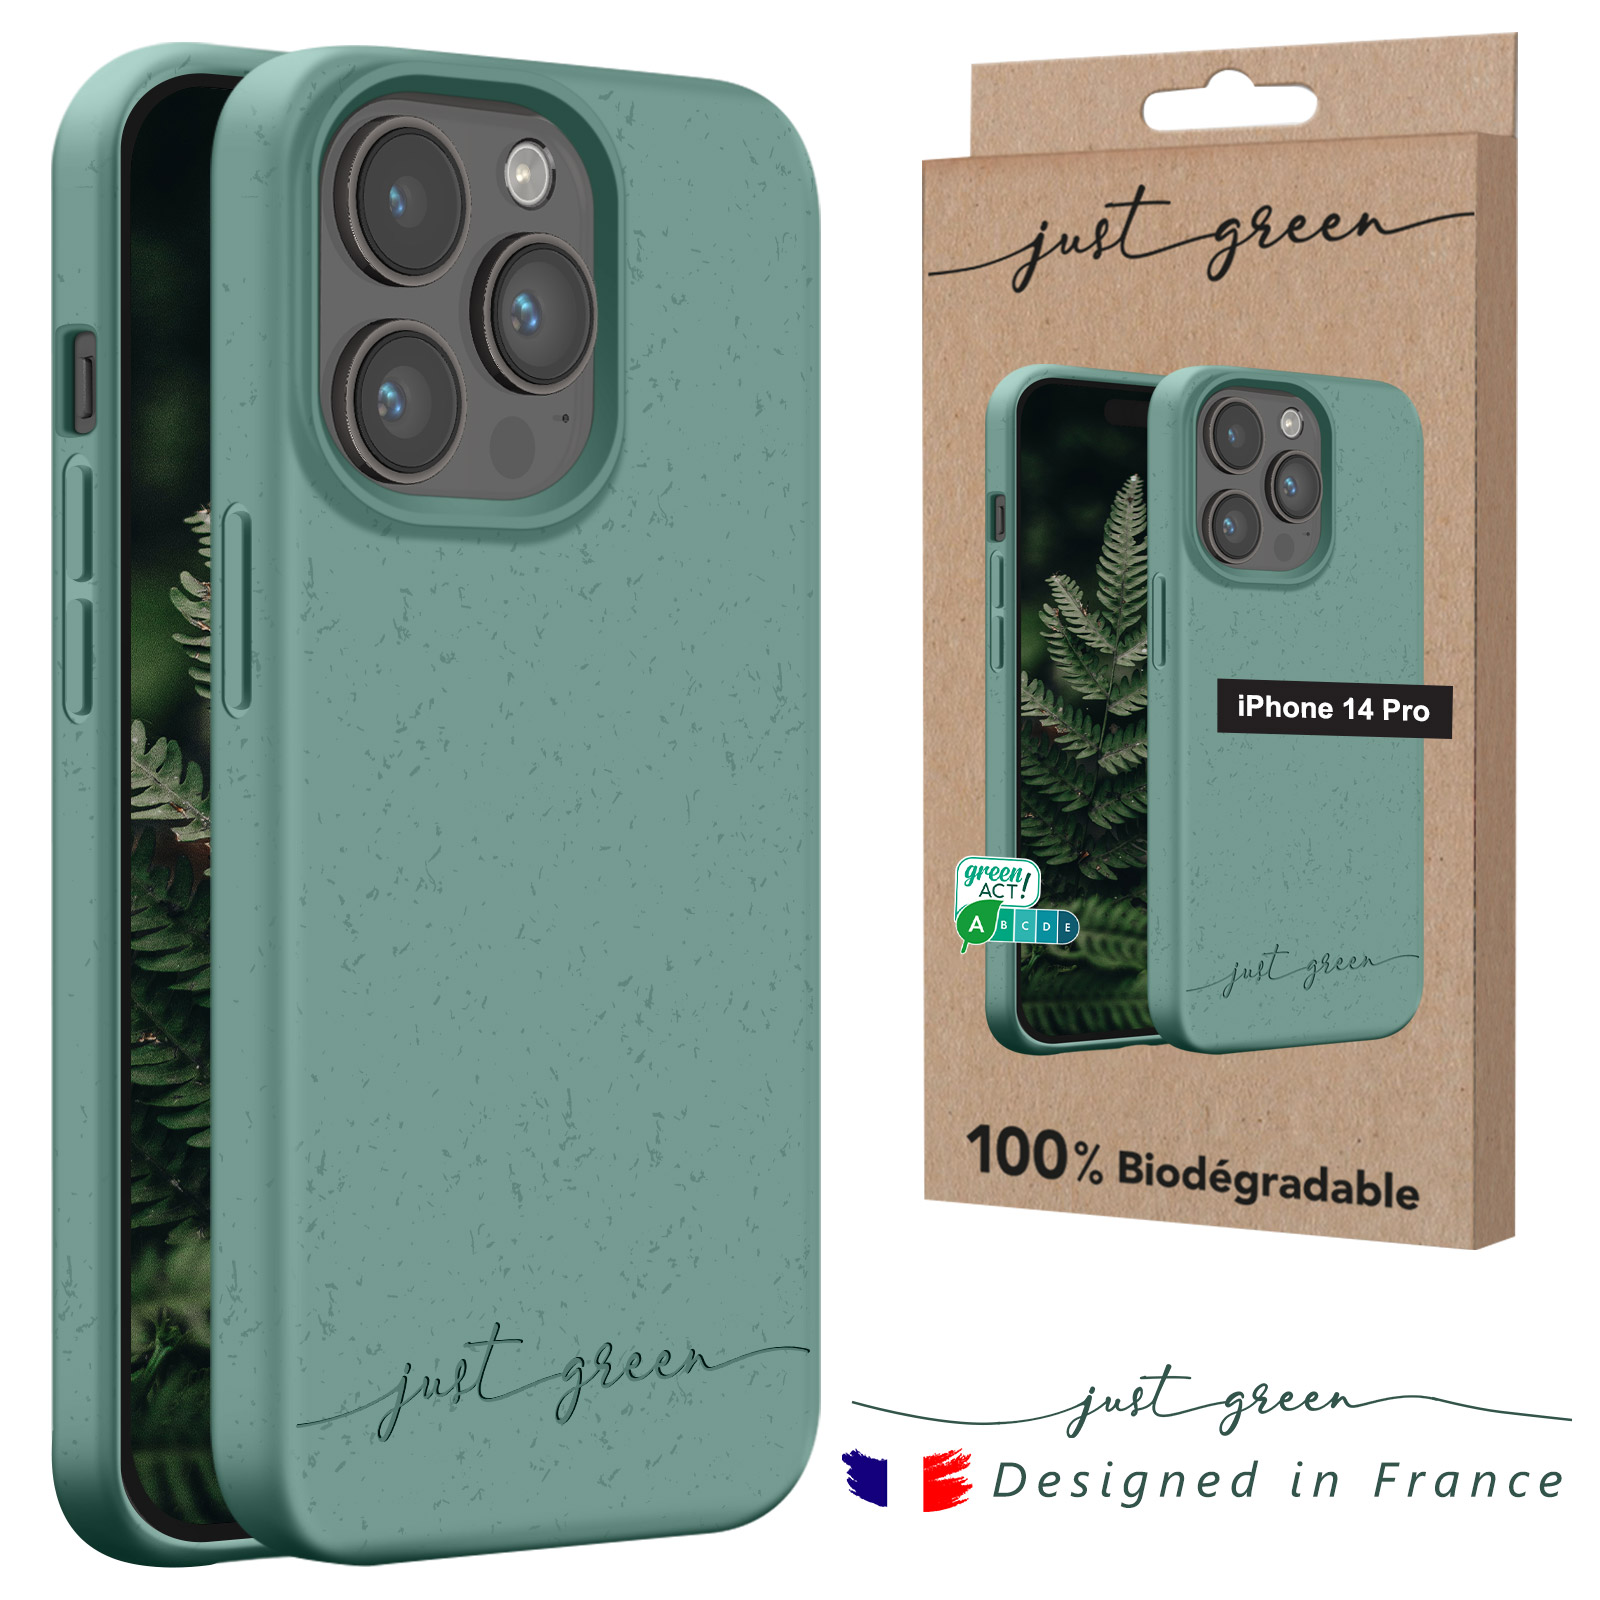 Just Green Carcasa Negra Biodegradable para iPhone 11 Pro